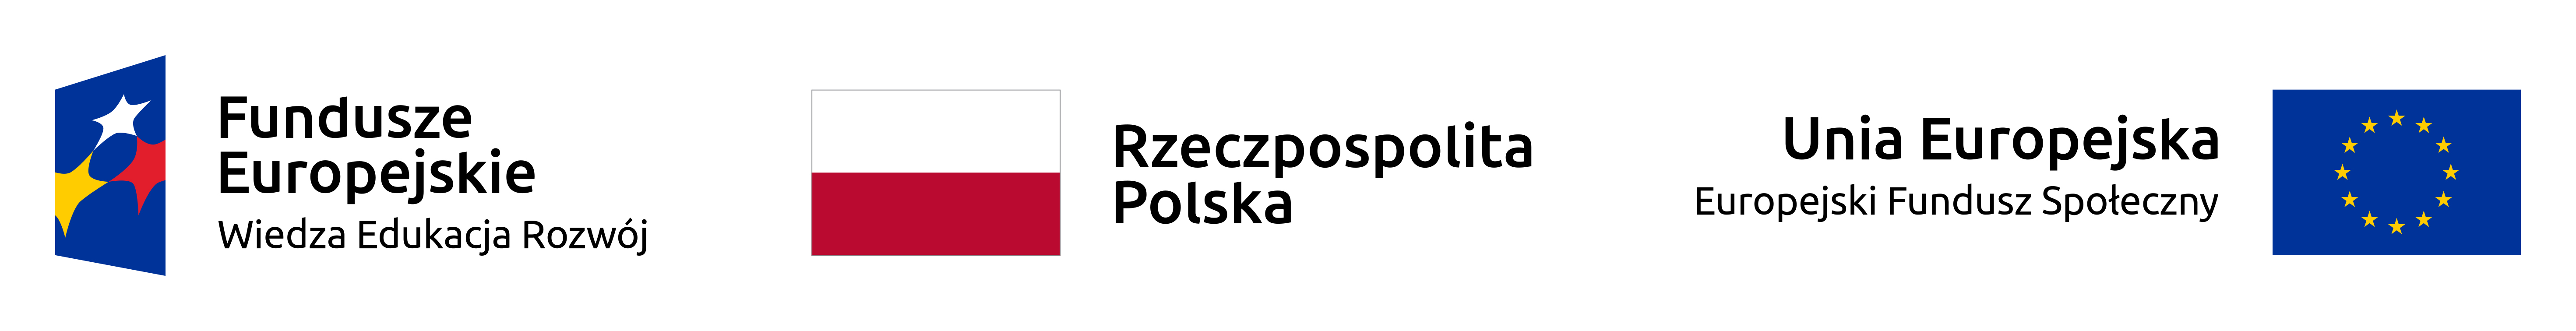 logotyp Funduszy Europejskich oraz flagi Rzeczypospolitej Polskiej i Unii Europejskiej